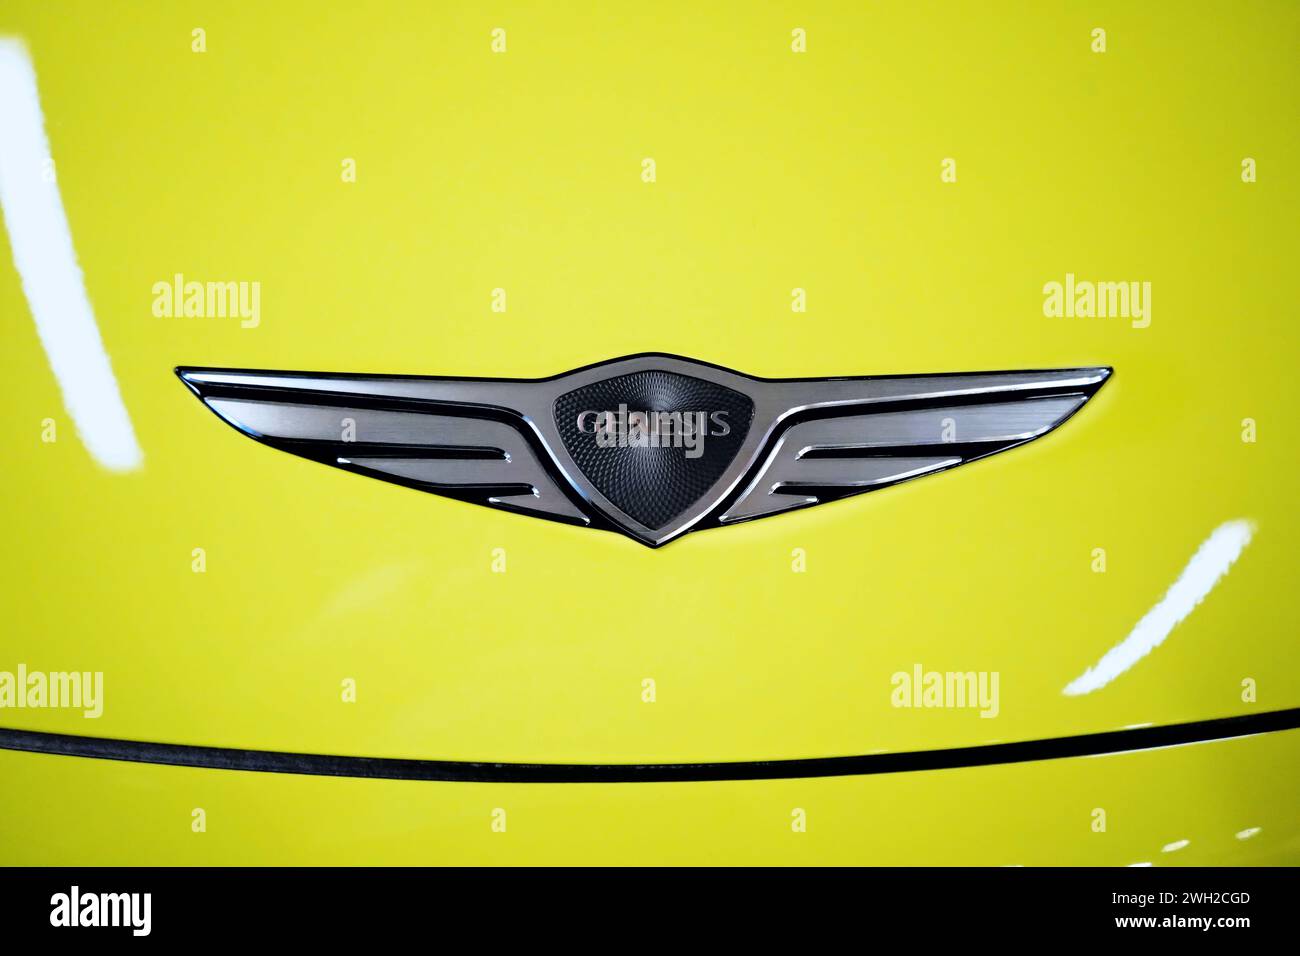 Honolulu, HI - 12 janvier 2024 : Genesis Motor, LLC. Emblème sud-coréen du fabricant de voitures de luxe sur le capot jaune de la voiture Banque D'Images